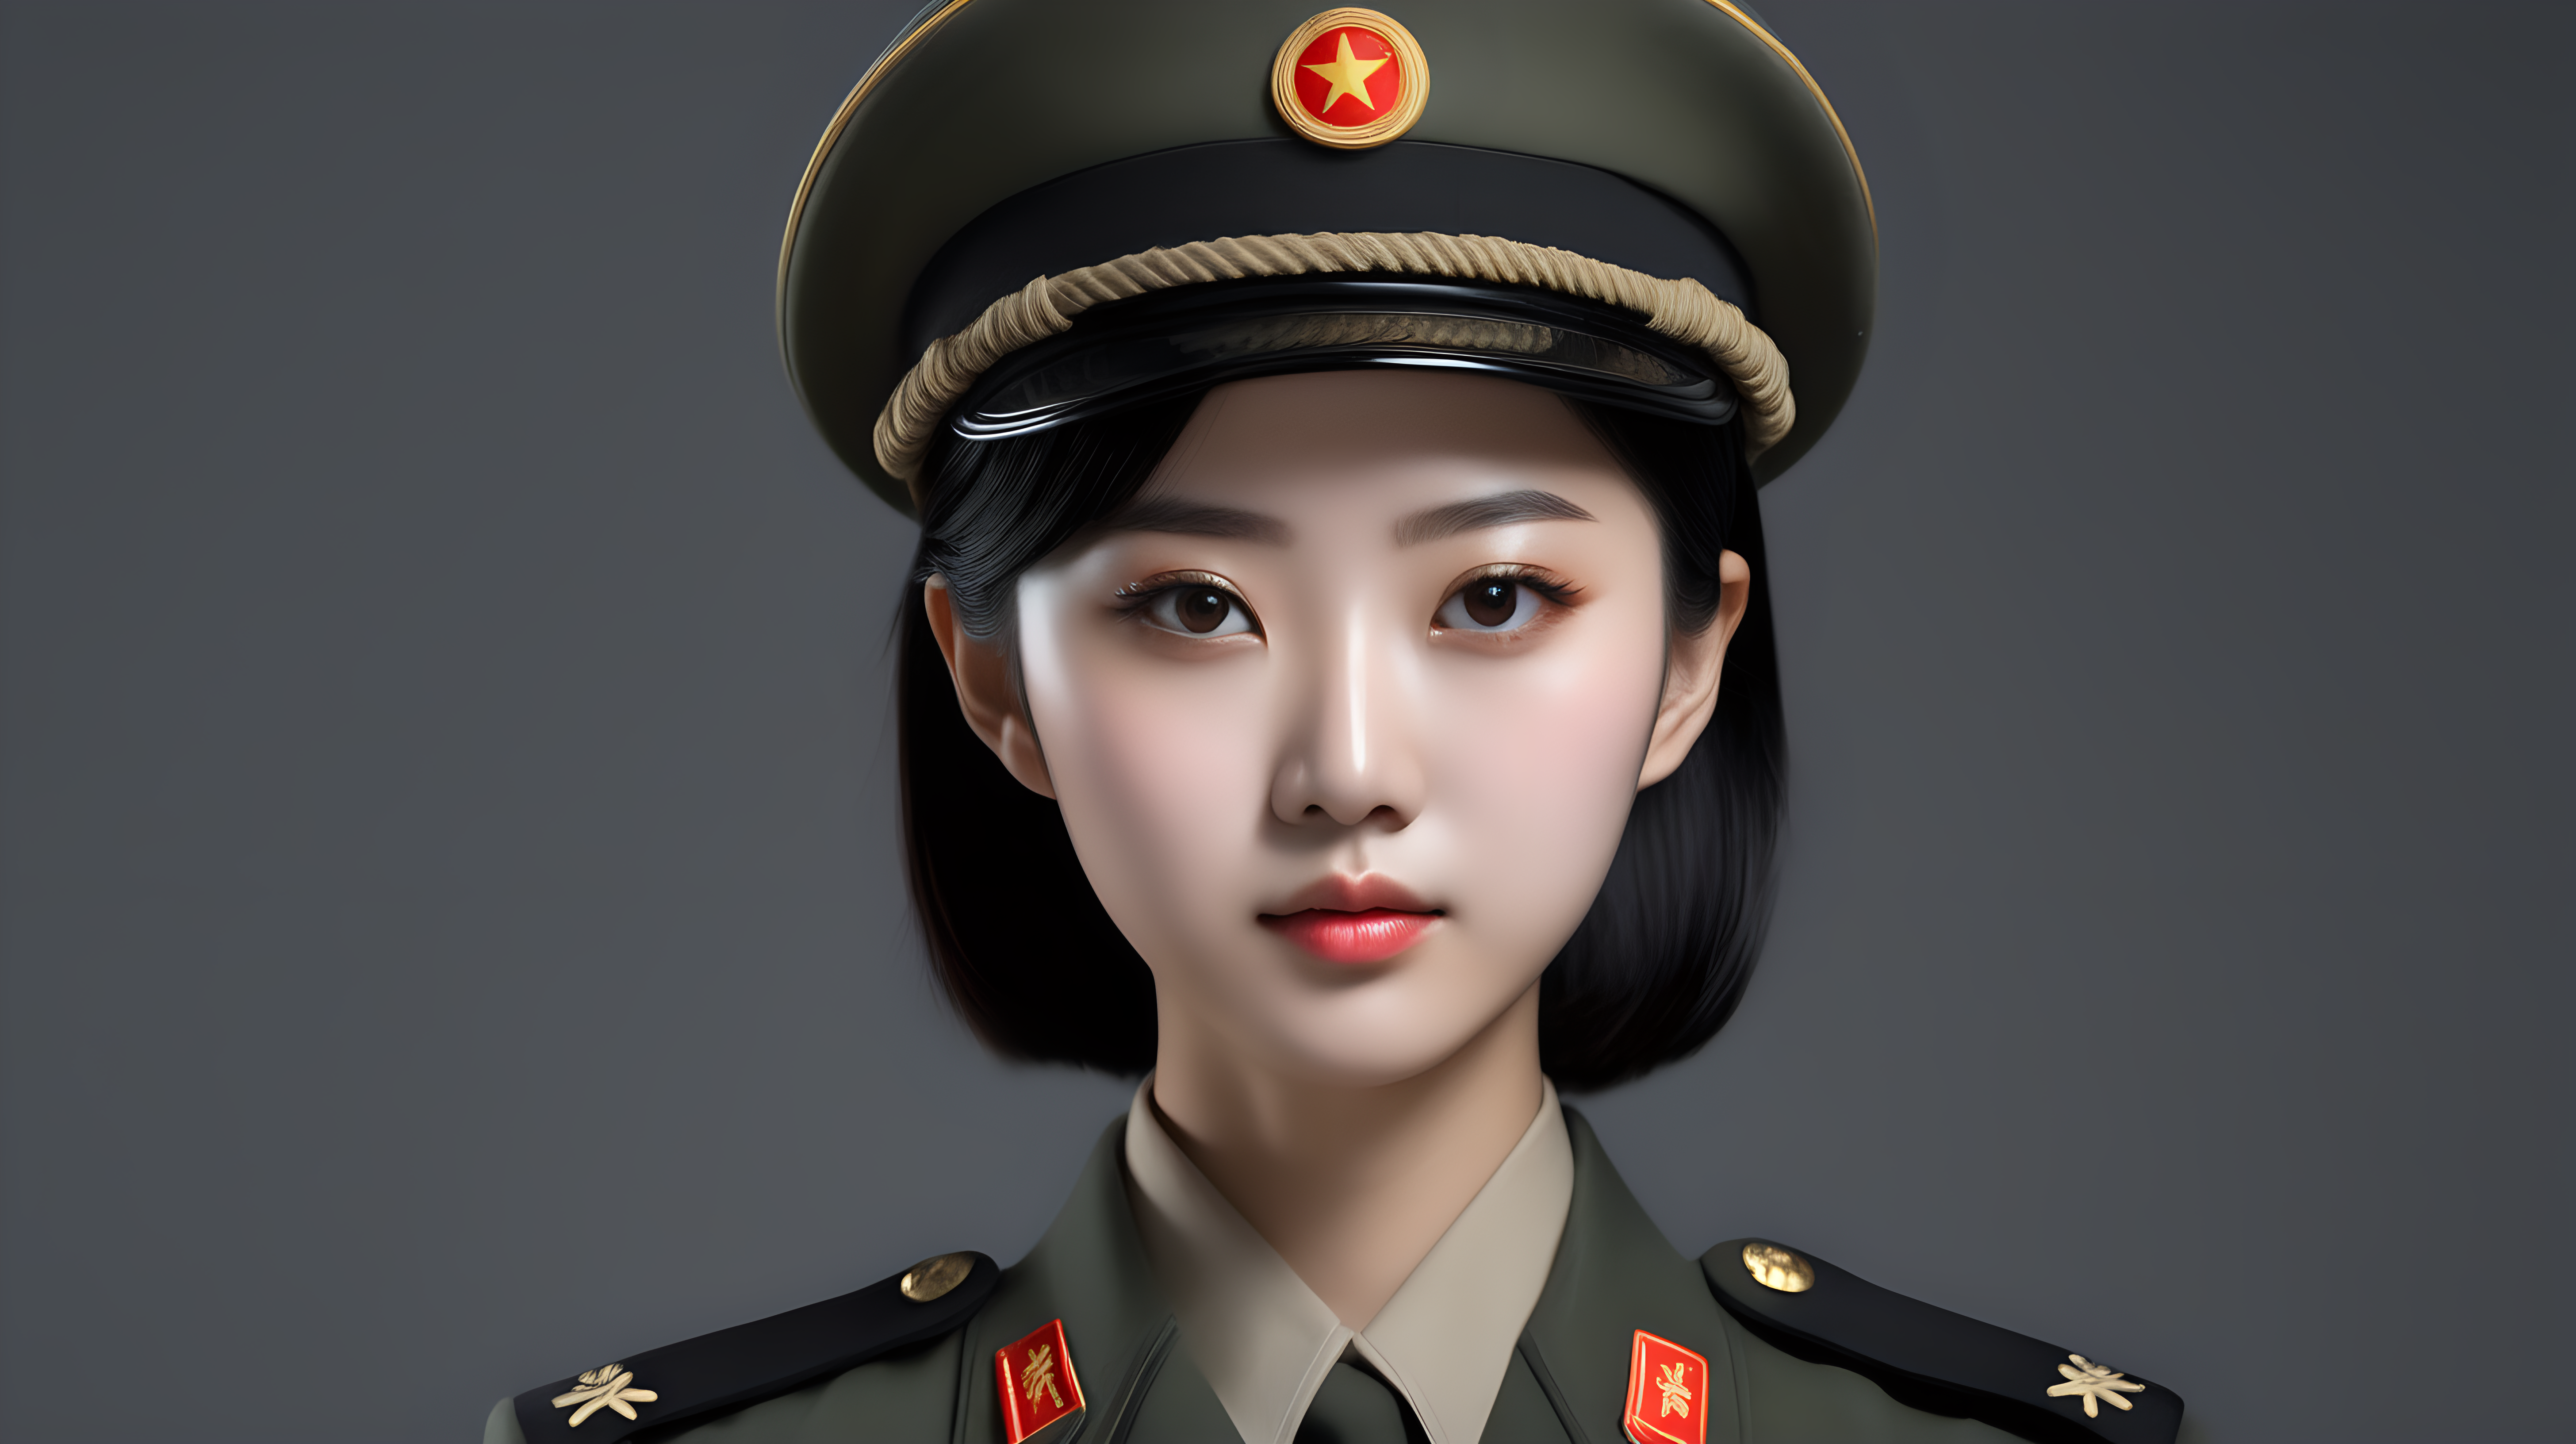 一名中国女兵
黑发
青年人
胸部较大
正脸
站立